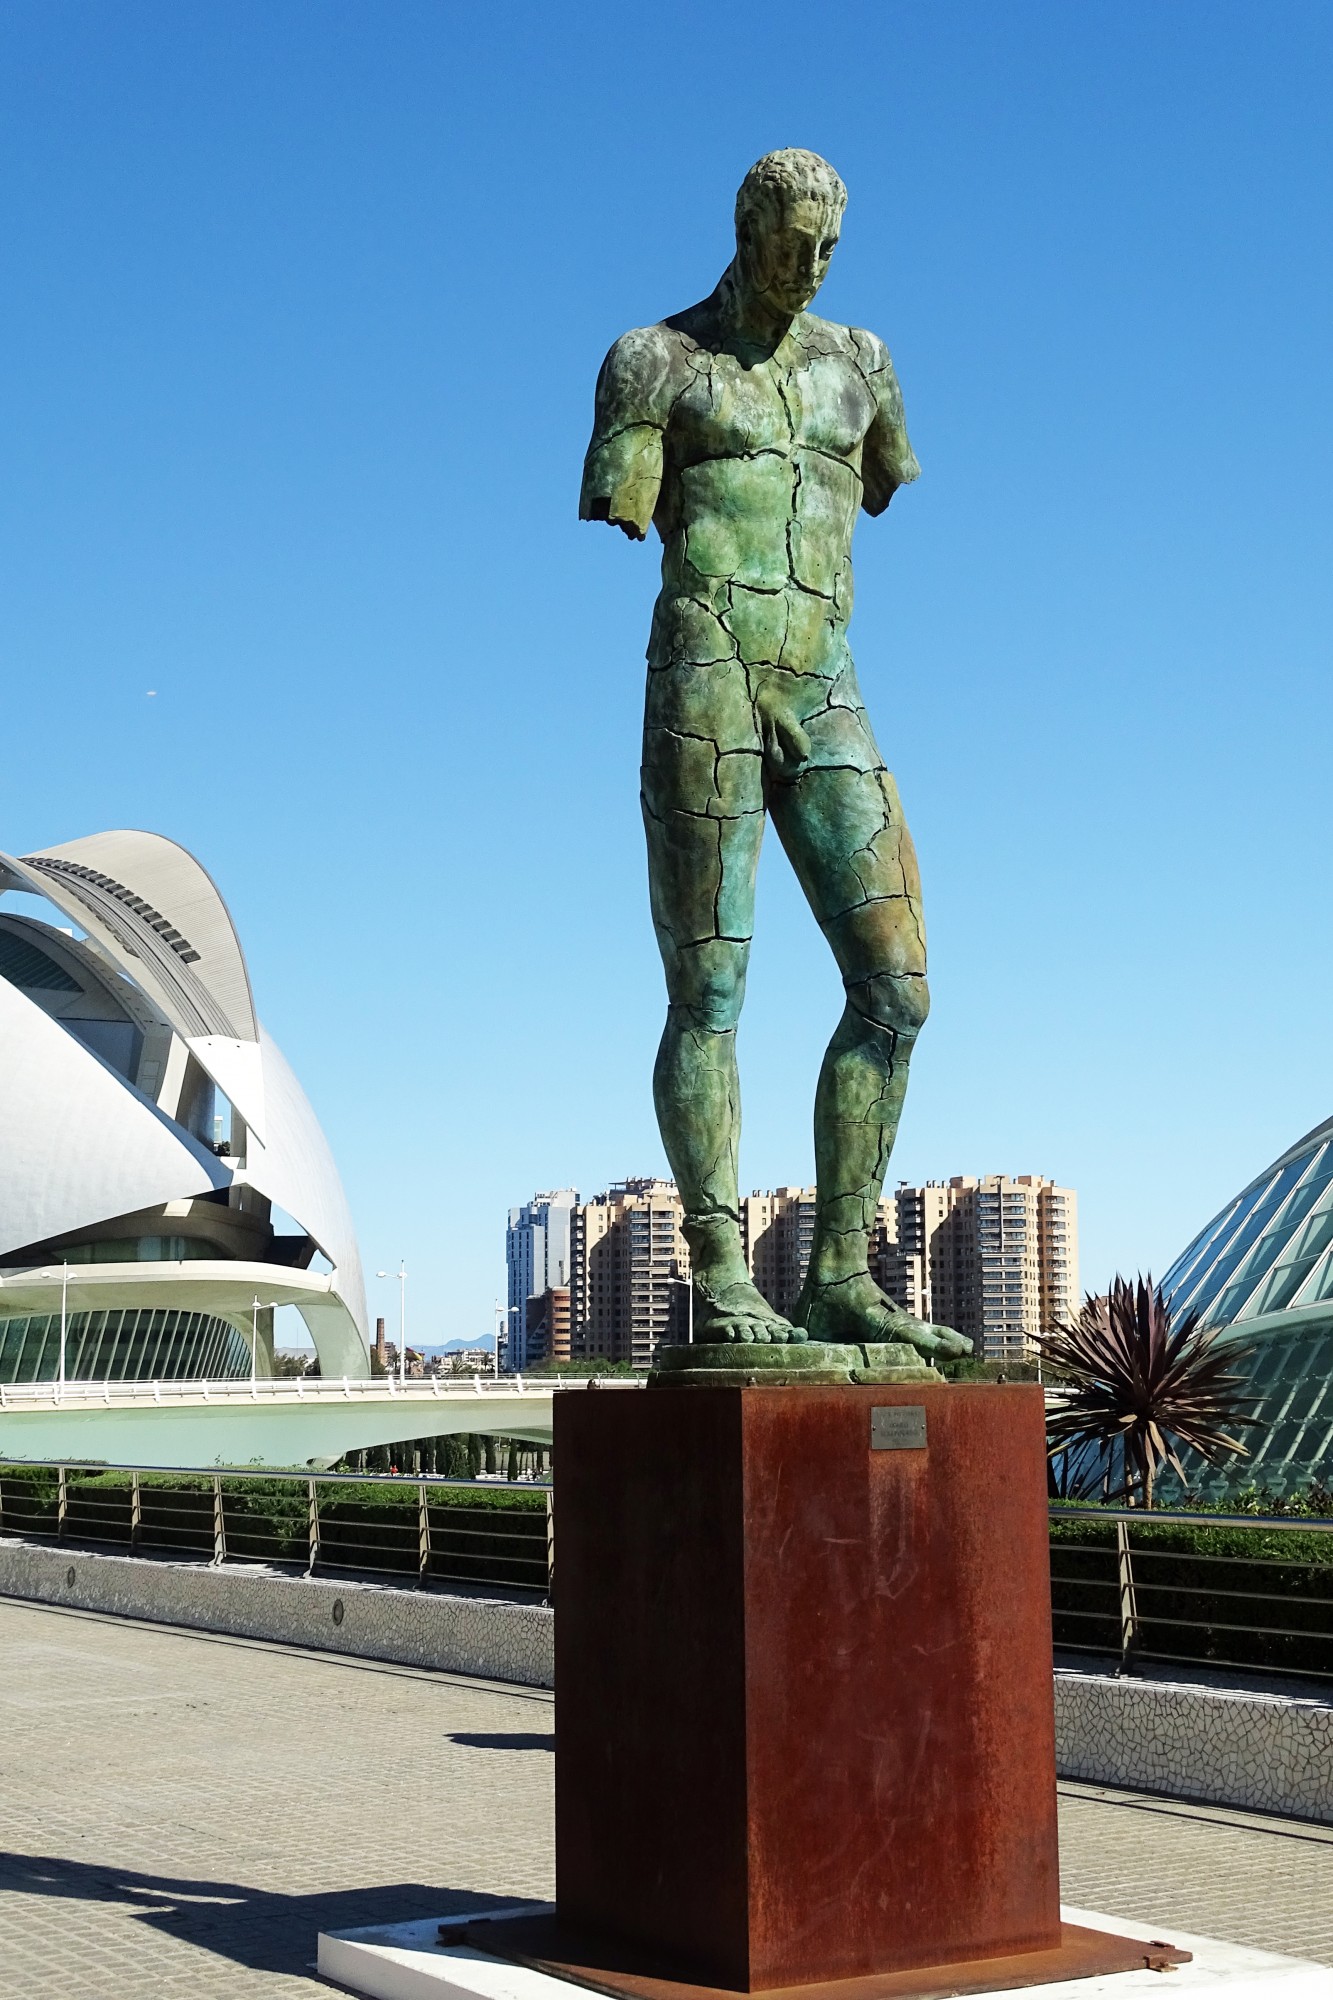 Foto: Estatua de bronce - València (Comunidad Valenciana), España